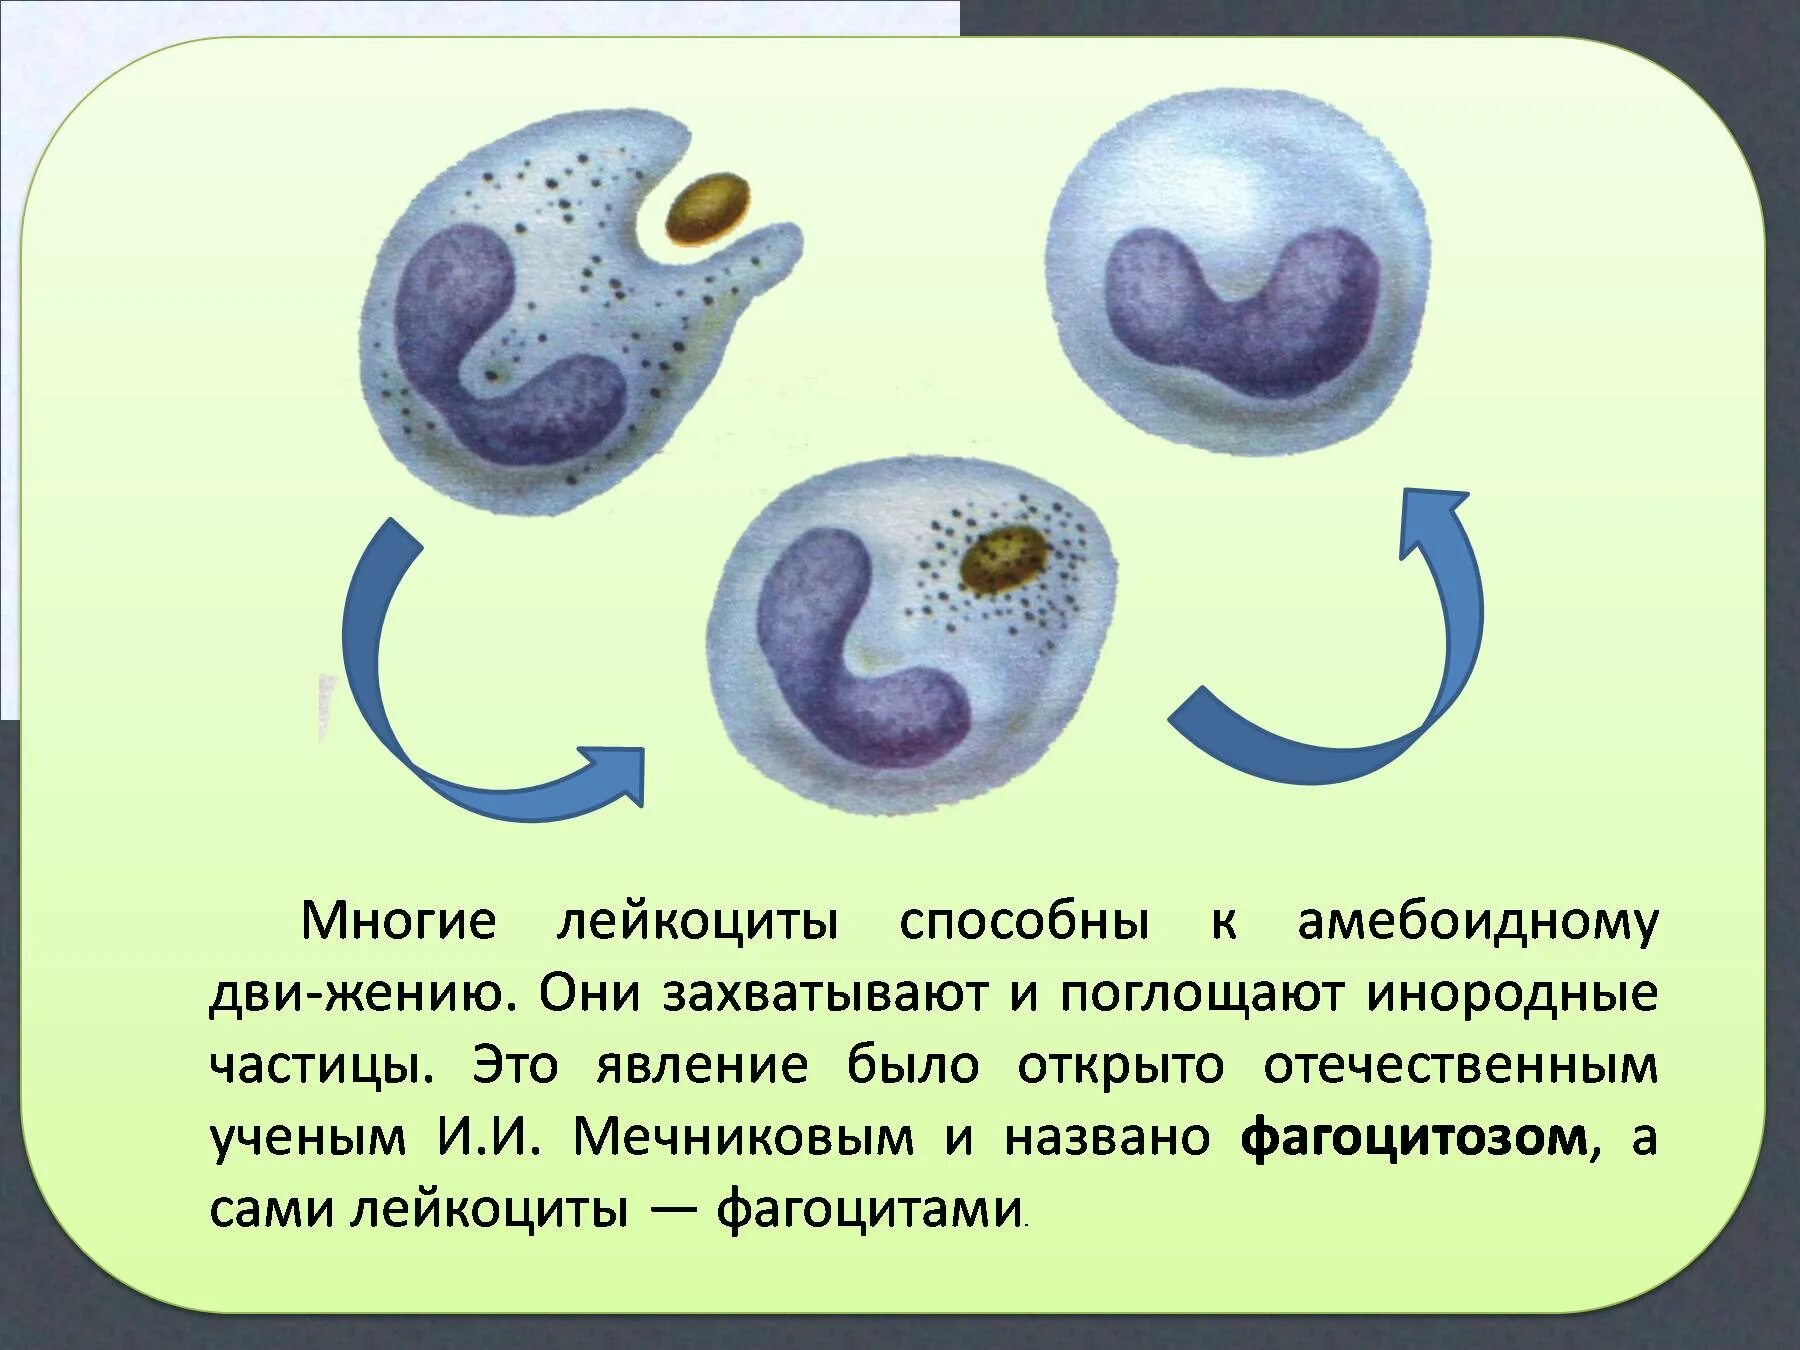 Эритроциты фагоциты лейкоциты. Лейкоциты способные к амебоидному движению. Передвижение лейкоцитов. Фагоцитоз лейкоцитов. Может осуществлять фагоцитоз способен к амебоидному движению